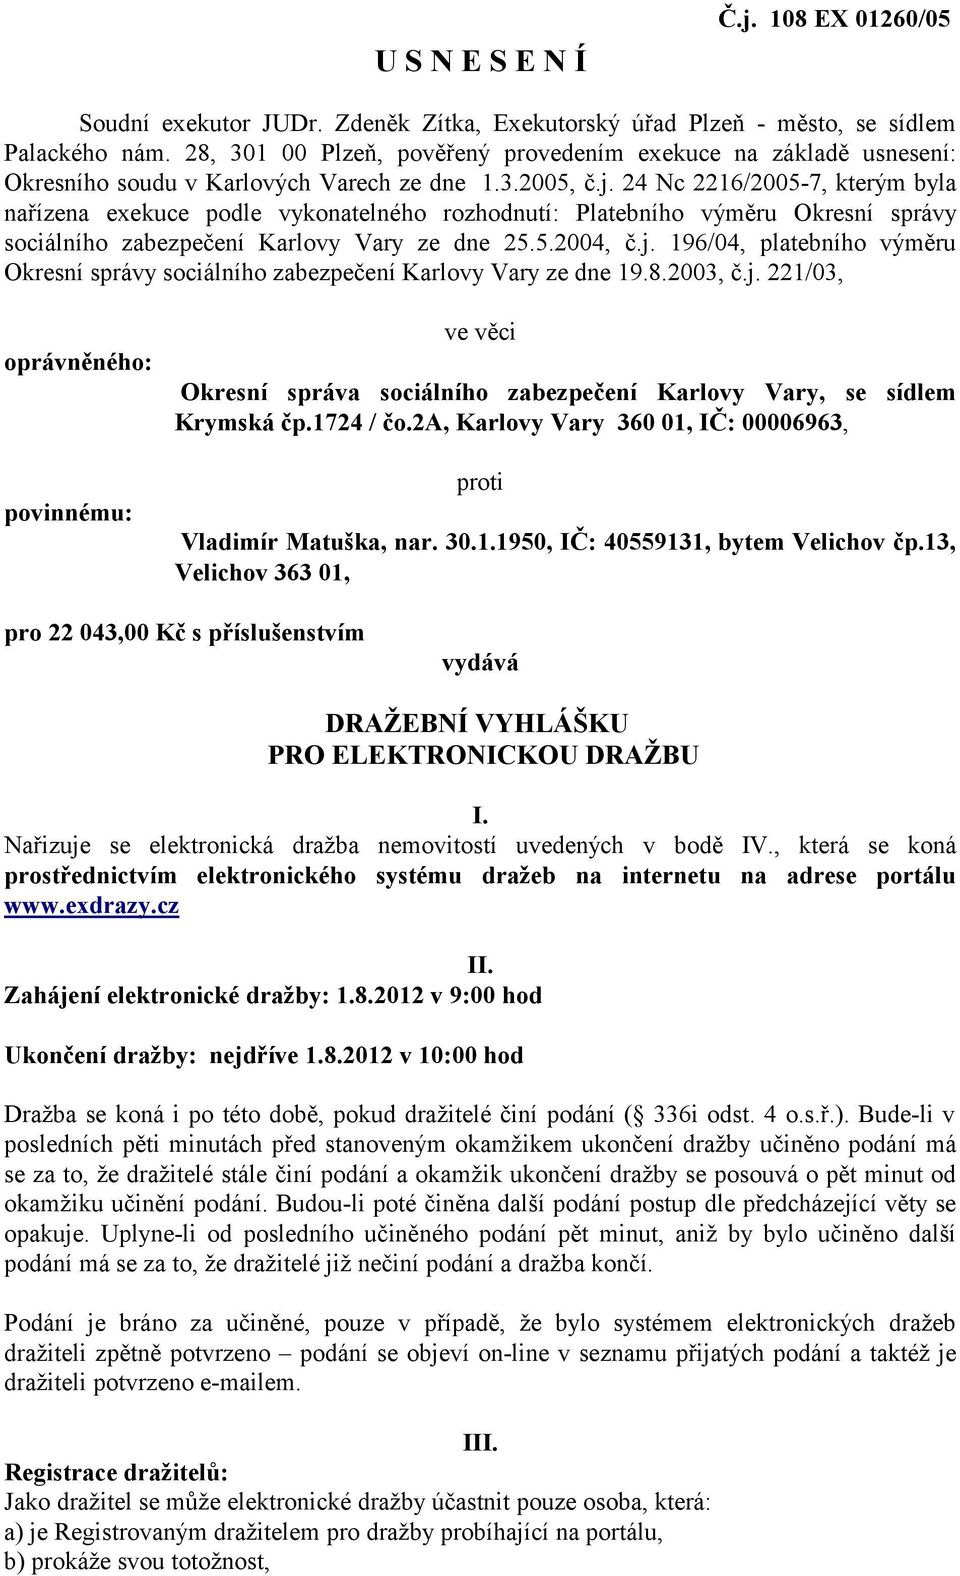 24 Nc 2216/2005-7, kterým byla nařízena exekuce podle vykonatelného rozhodnutí: Platebního výměru Okresní správy sociálního zabezpečení Karlovy Vary ze dne 25.5.2004, č.j.